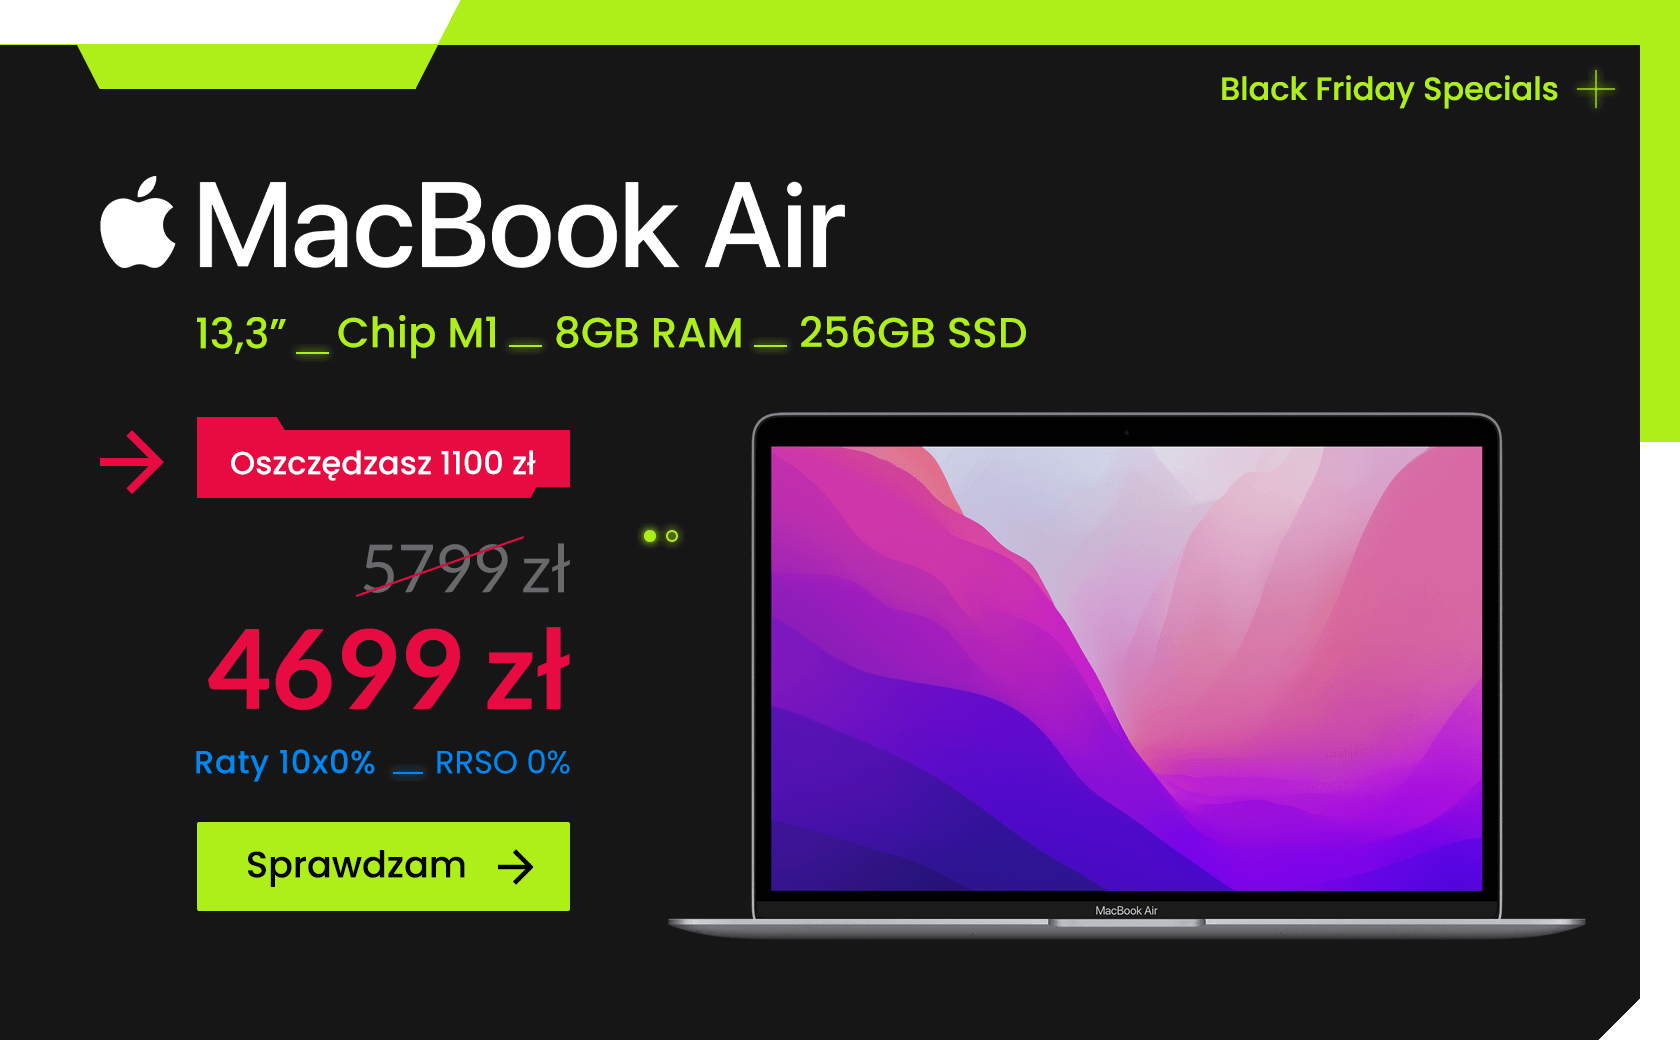 Black Friday Specials - MacBook Air